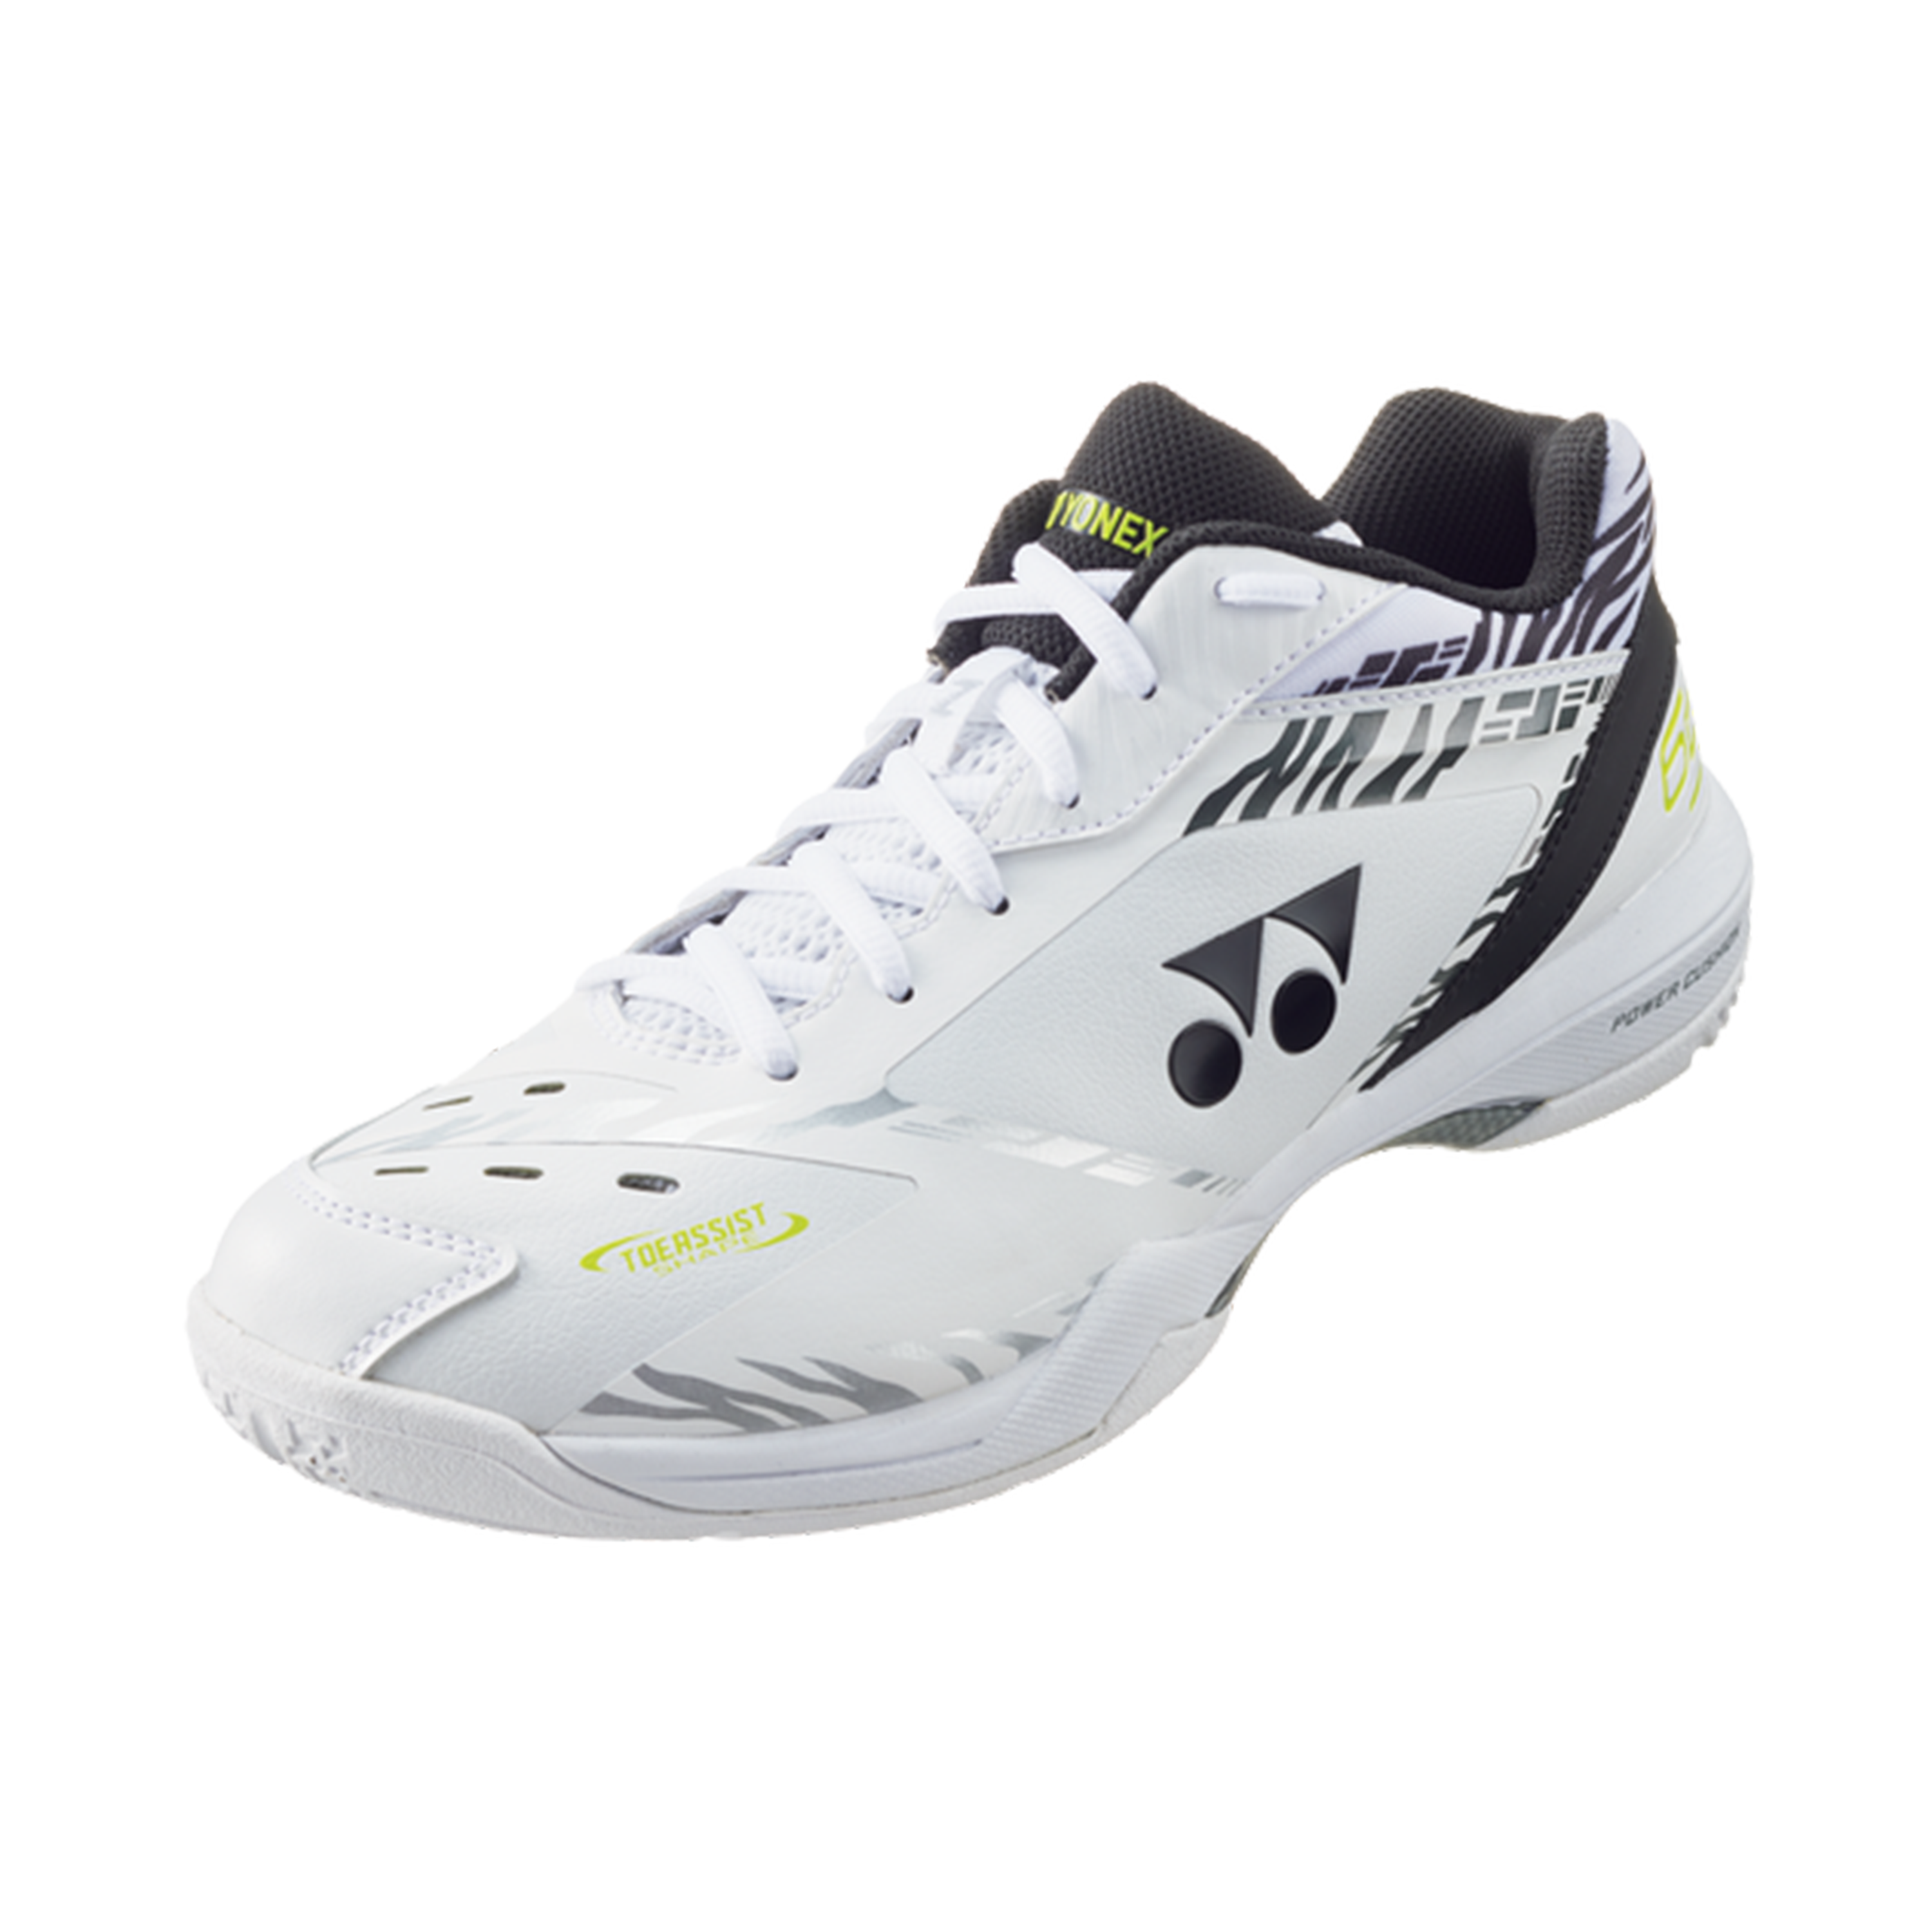 Yonex Power Cushion 65Z 3 Badminton Shoes White Tiger MEN'S (Clearance)